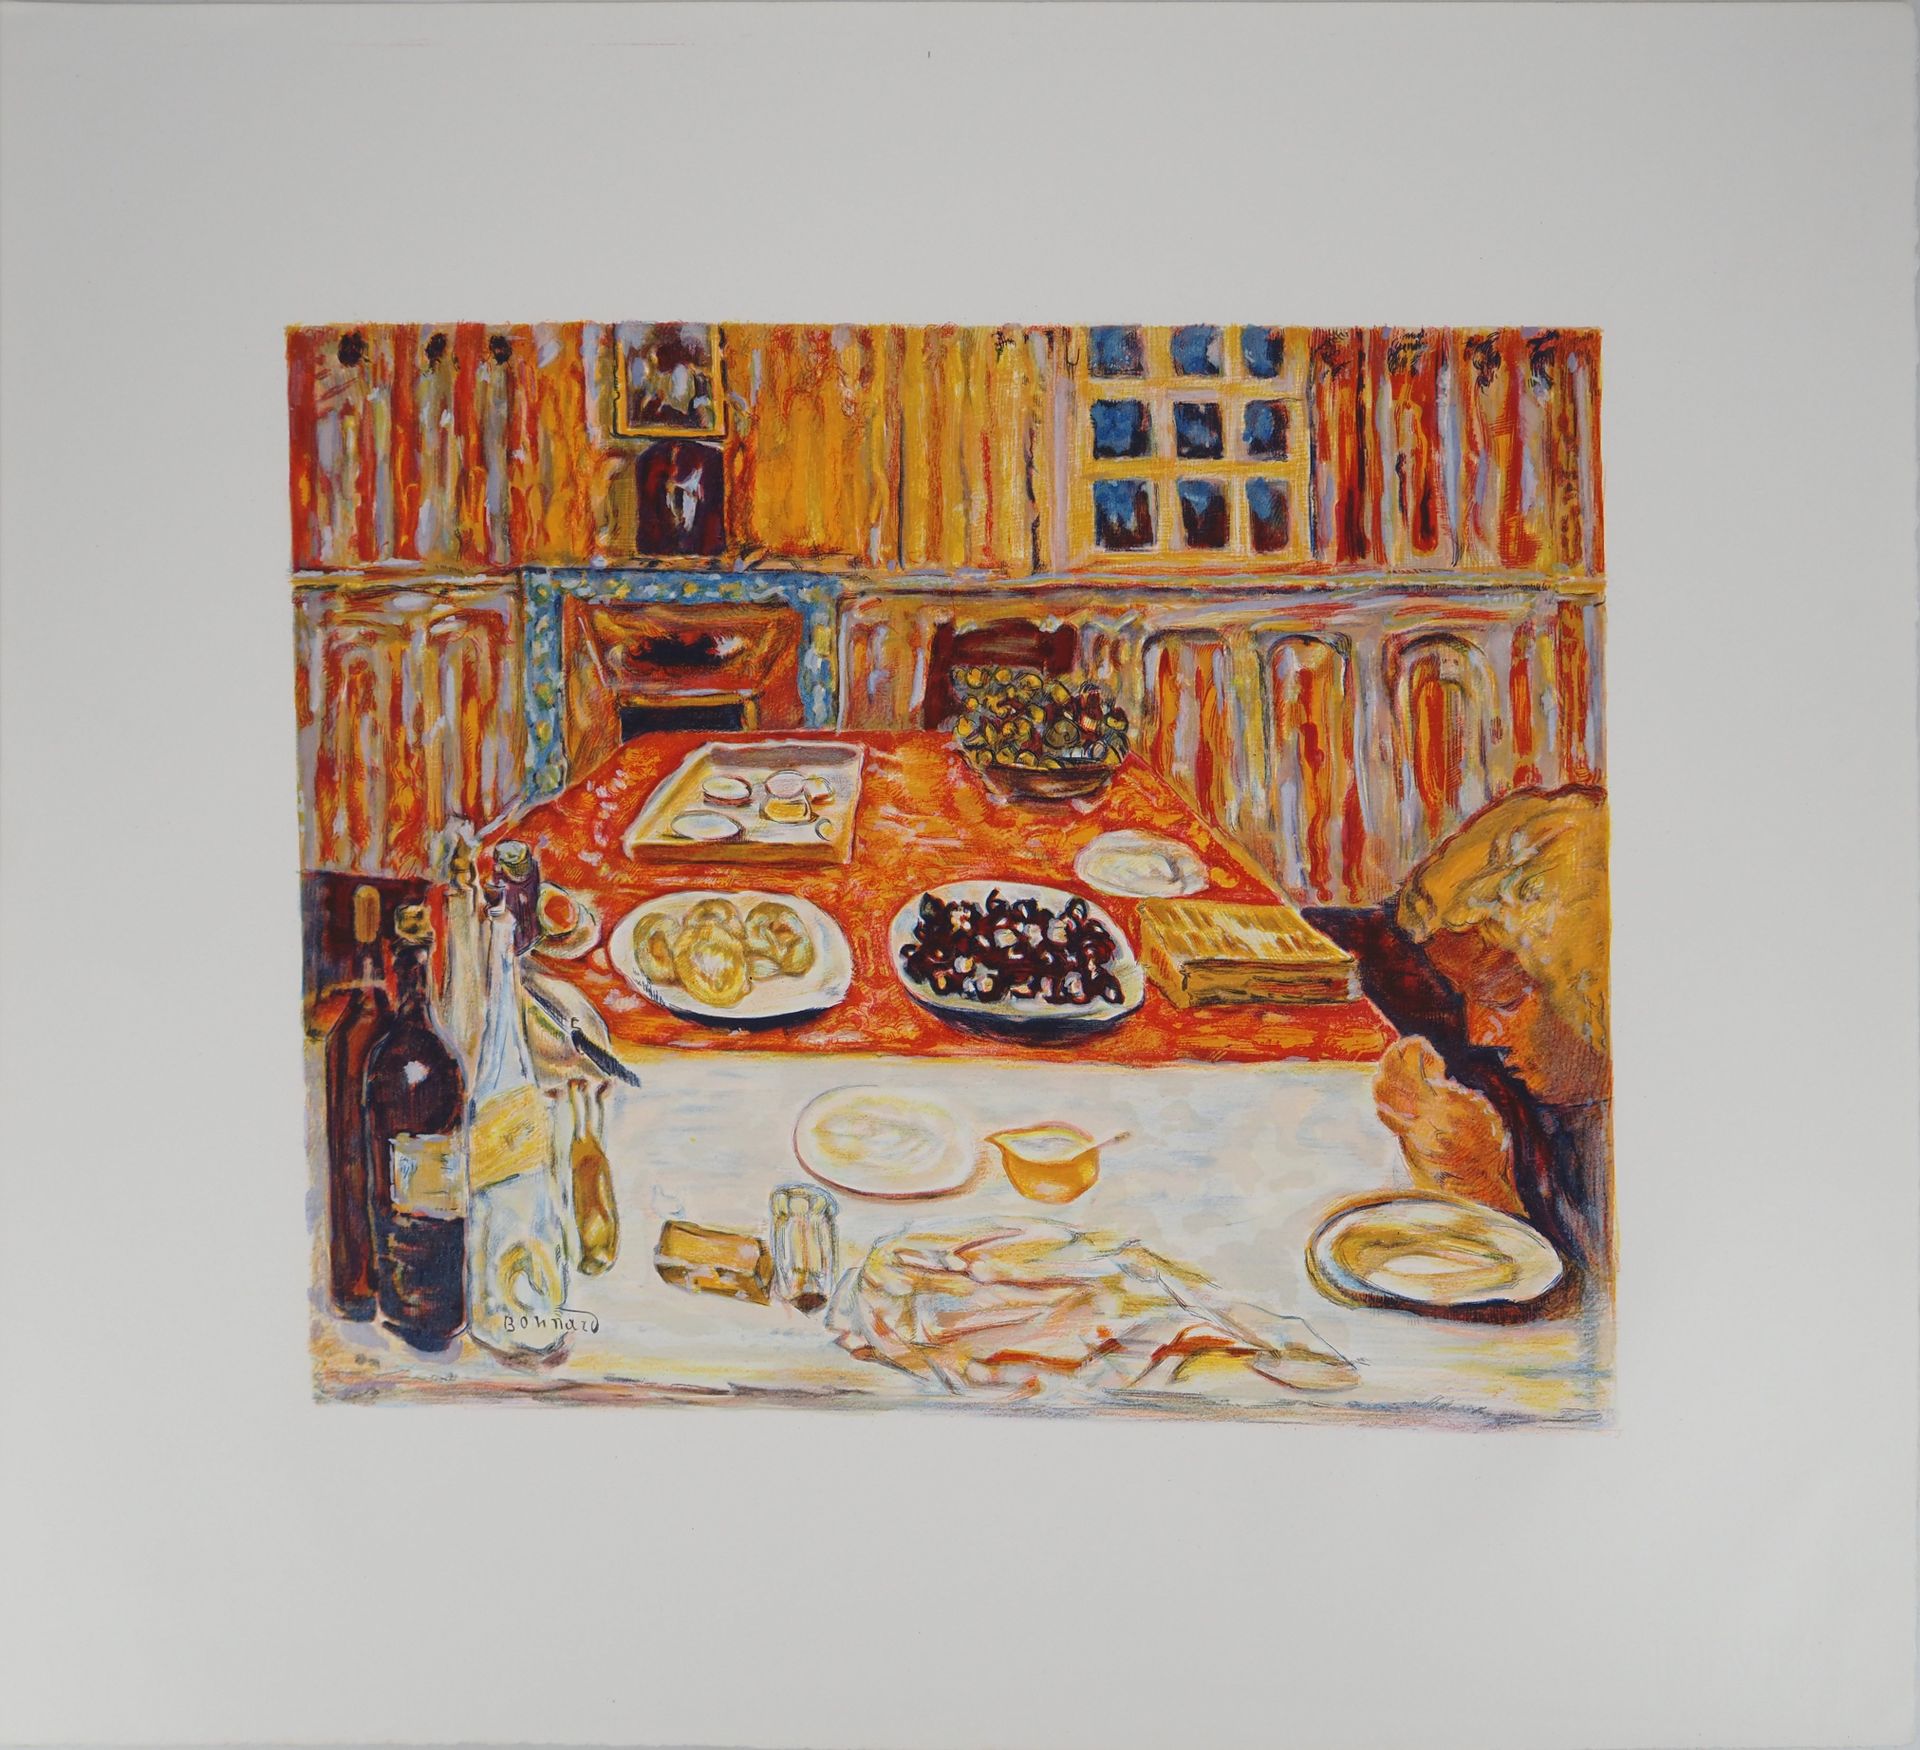 PIERRE BONNARD Pierre Bonnard (1867-1947)

Almuerzo en Orange

Litografía en col&hellip;